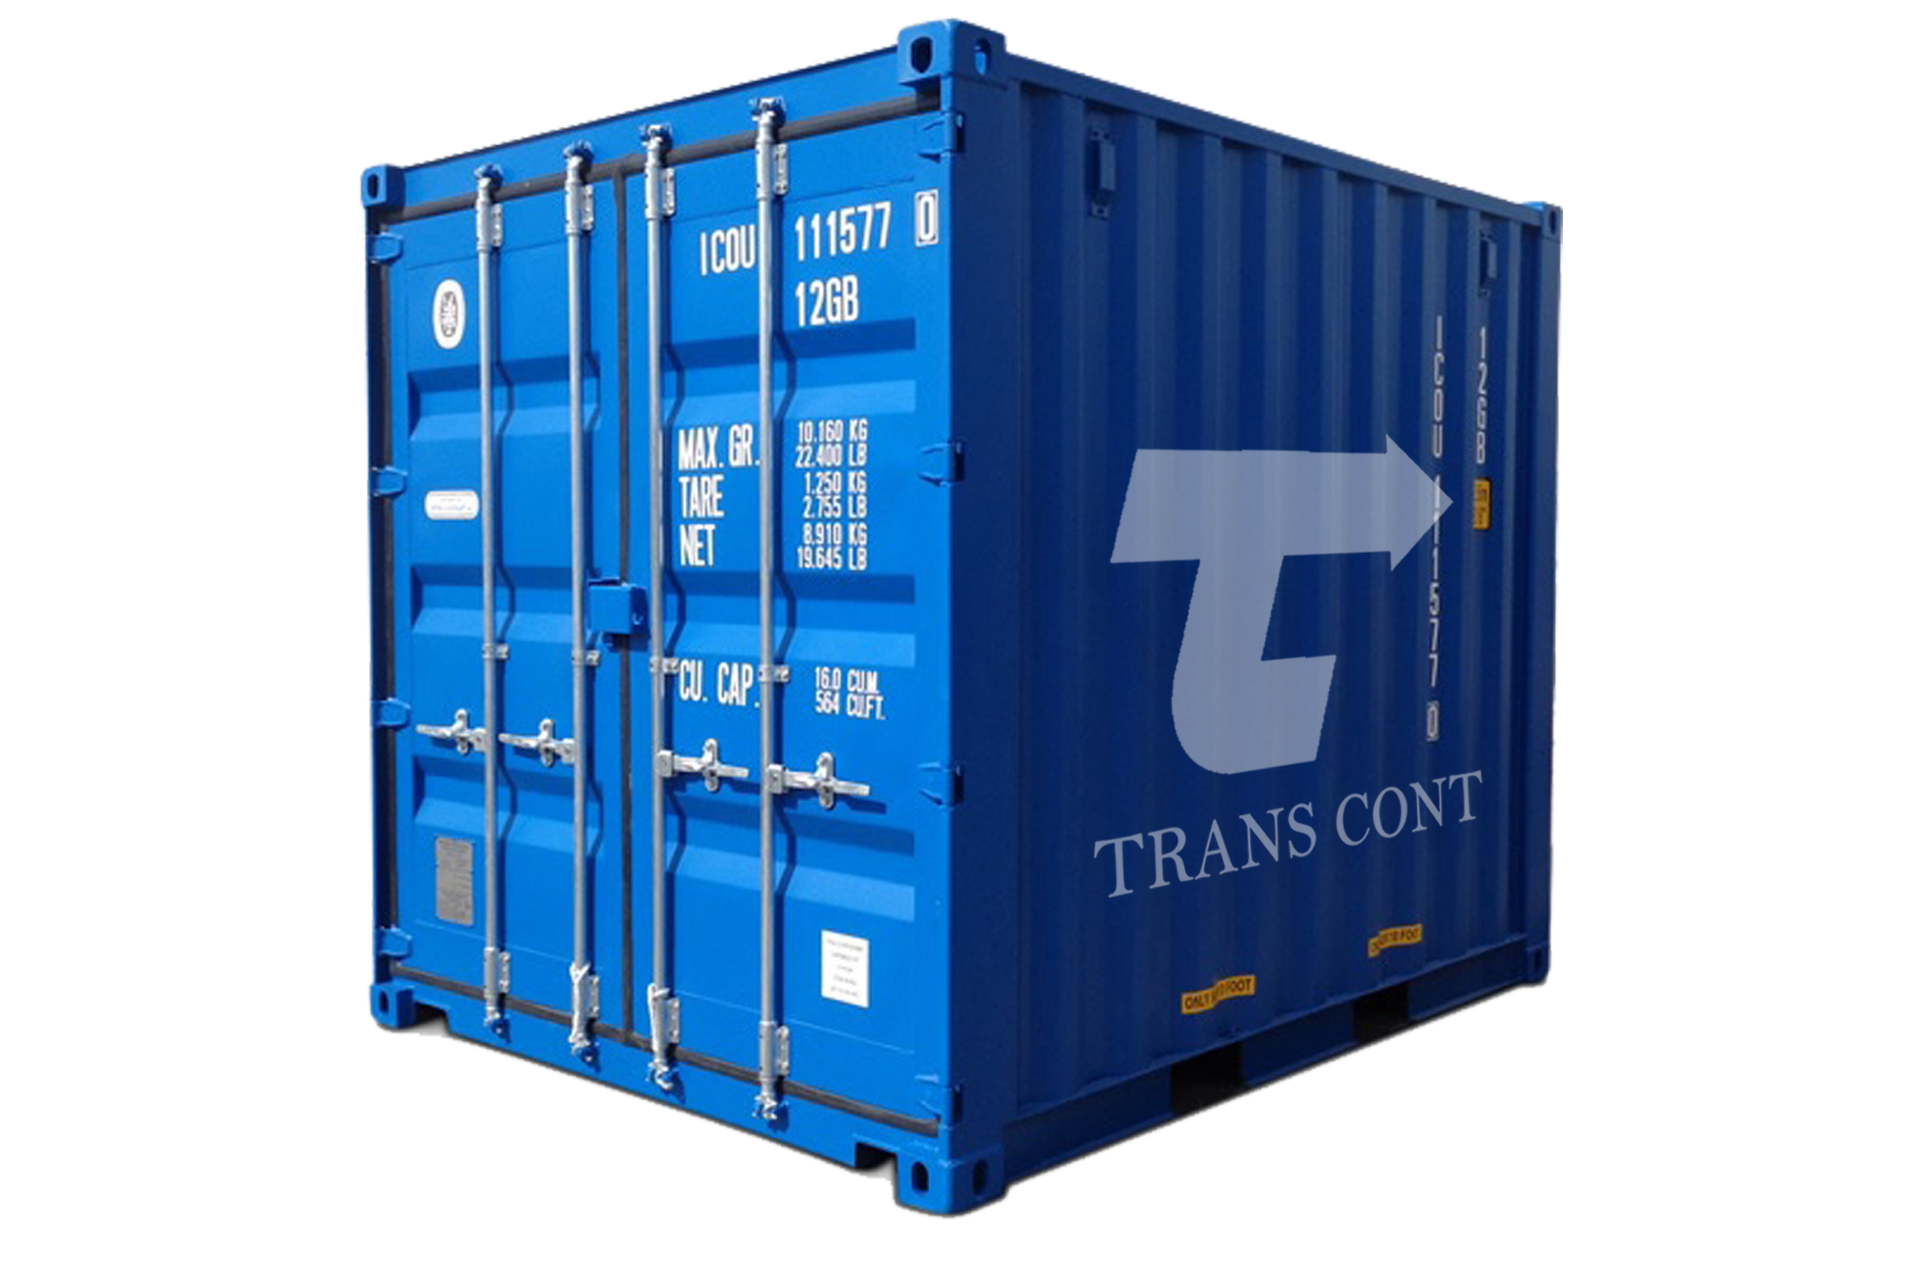 Компактные контейнеры. Железнодорожный контейнер. Компактный контейнер. Контейнера малогабаритного v=1000 л. КМГУ (контейнер малогабаритных грузов универсальный).